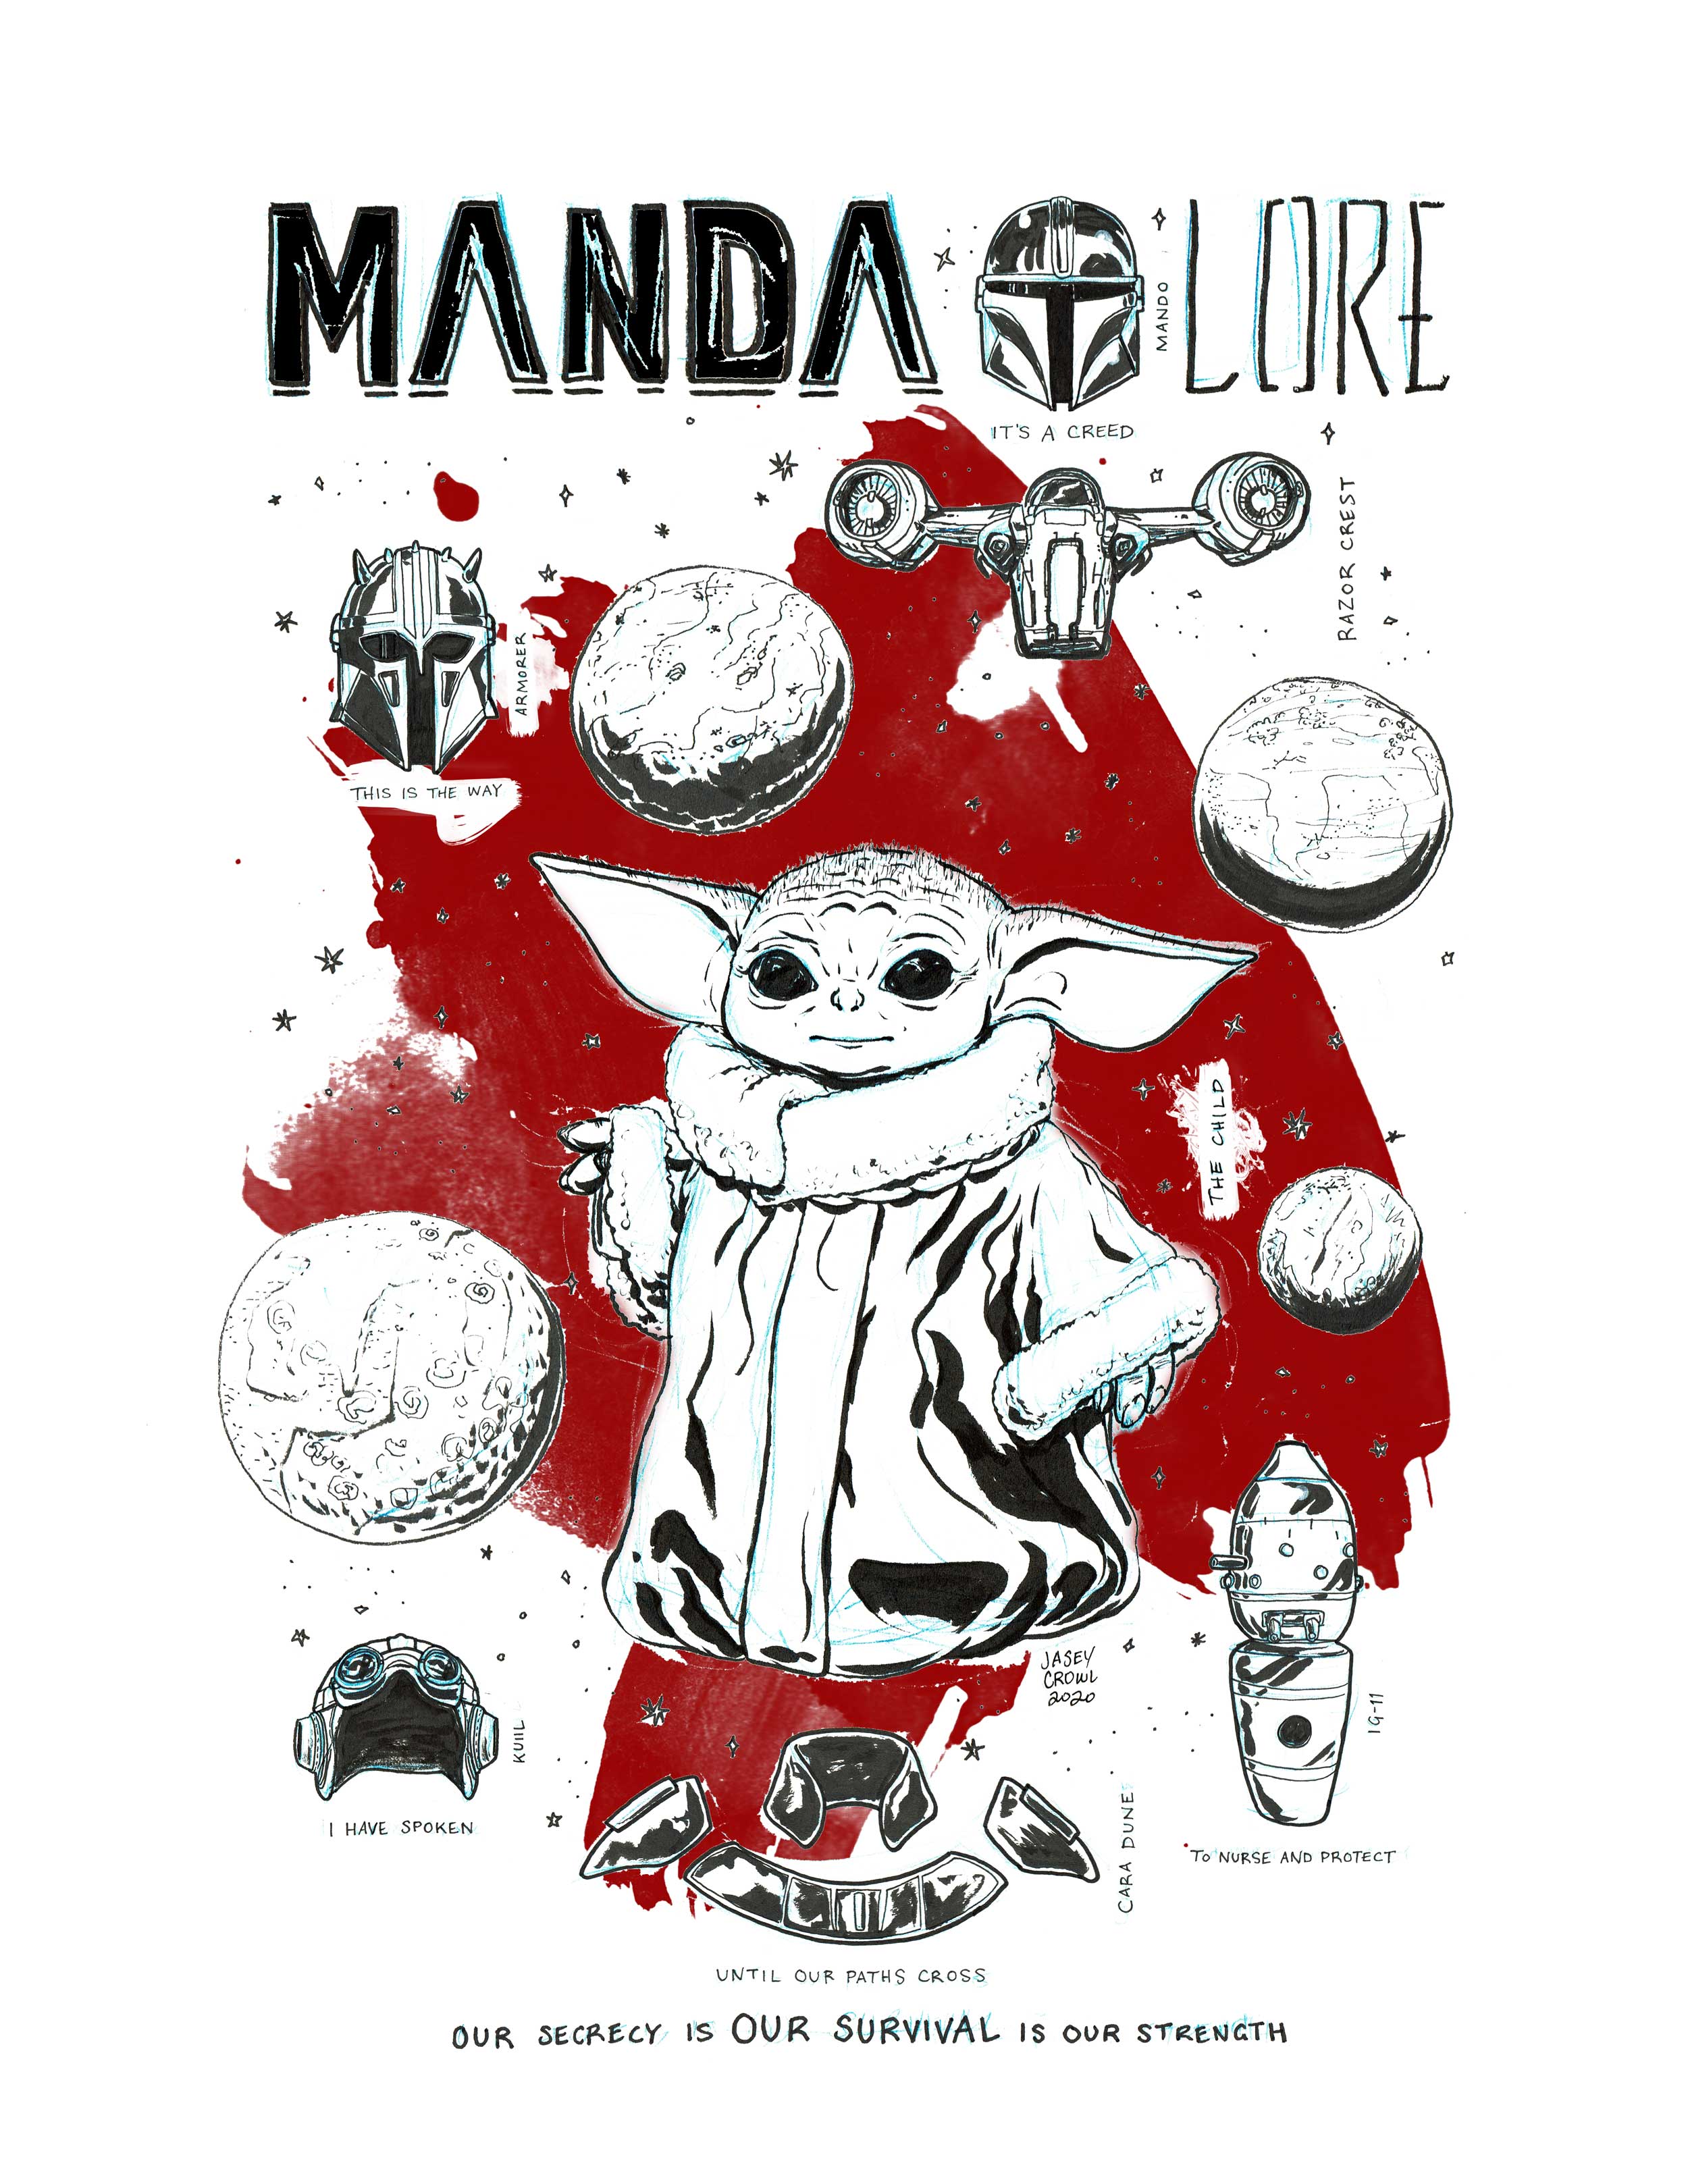 Manda Lore Mandalorian Fan Art - Jasey Crowl Draws